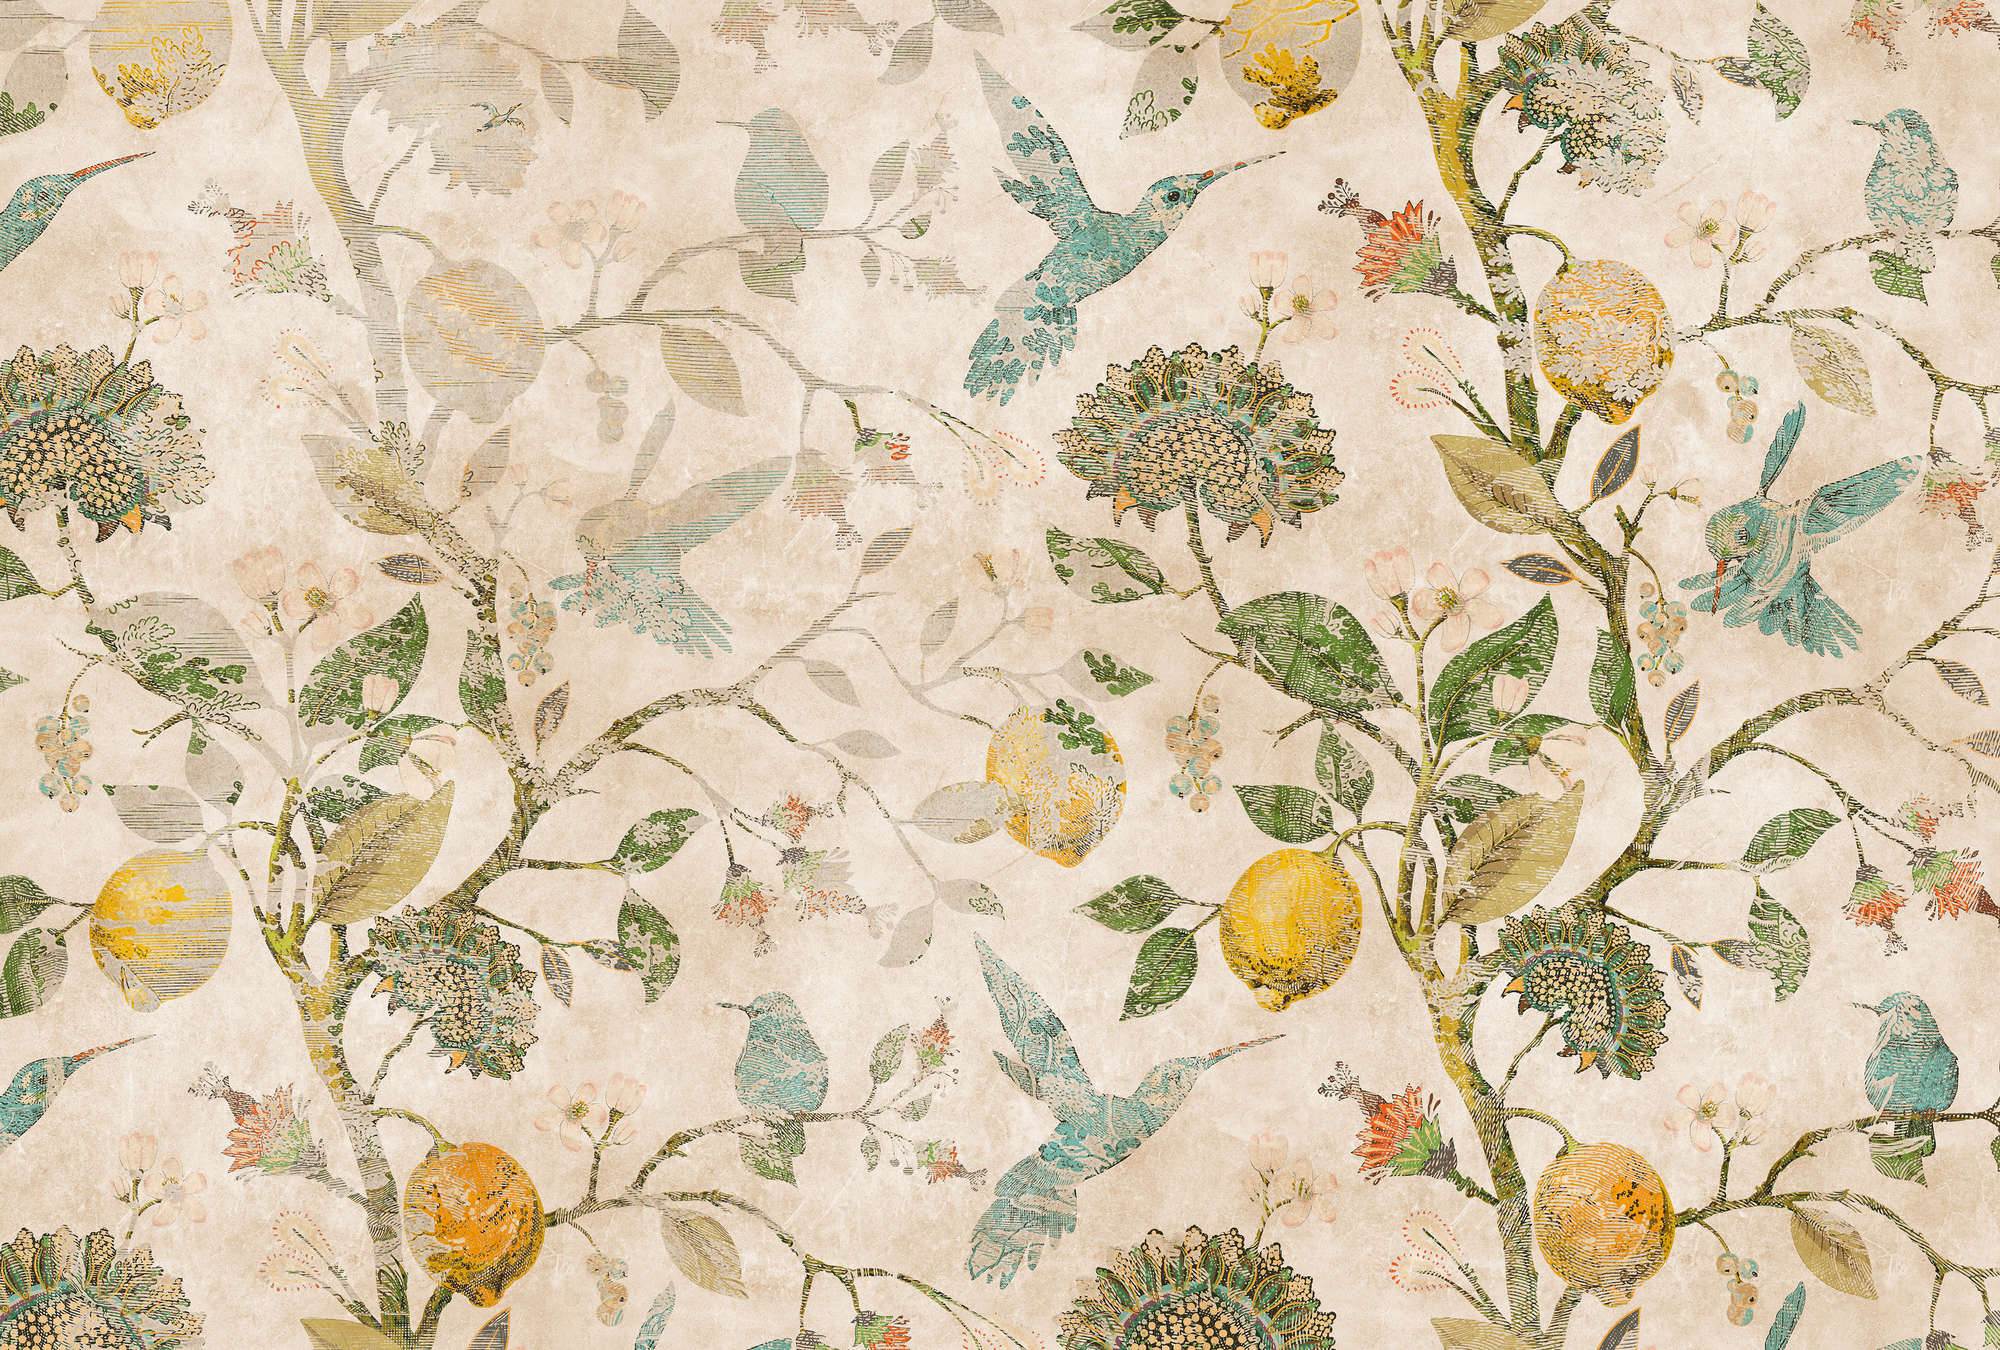             In the Lemon Tree 2 - Papier peint vintage citron avec feuilles et oiseaux
        